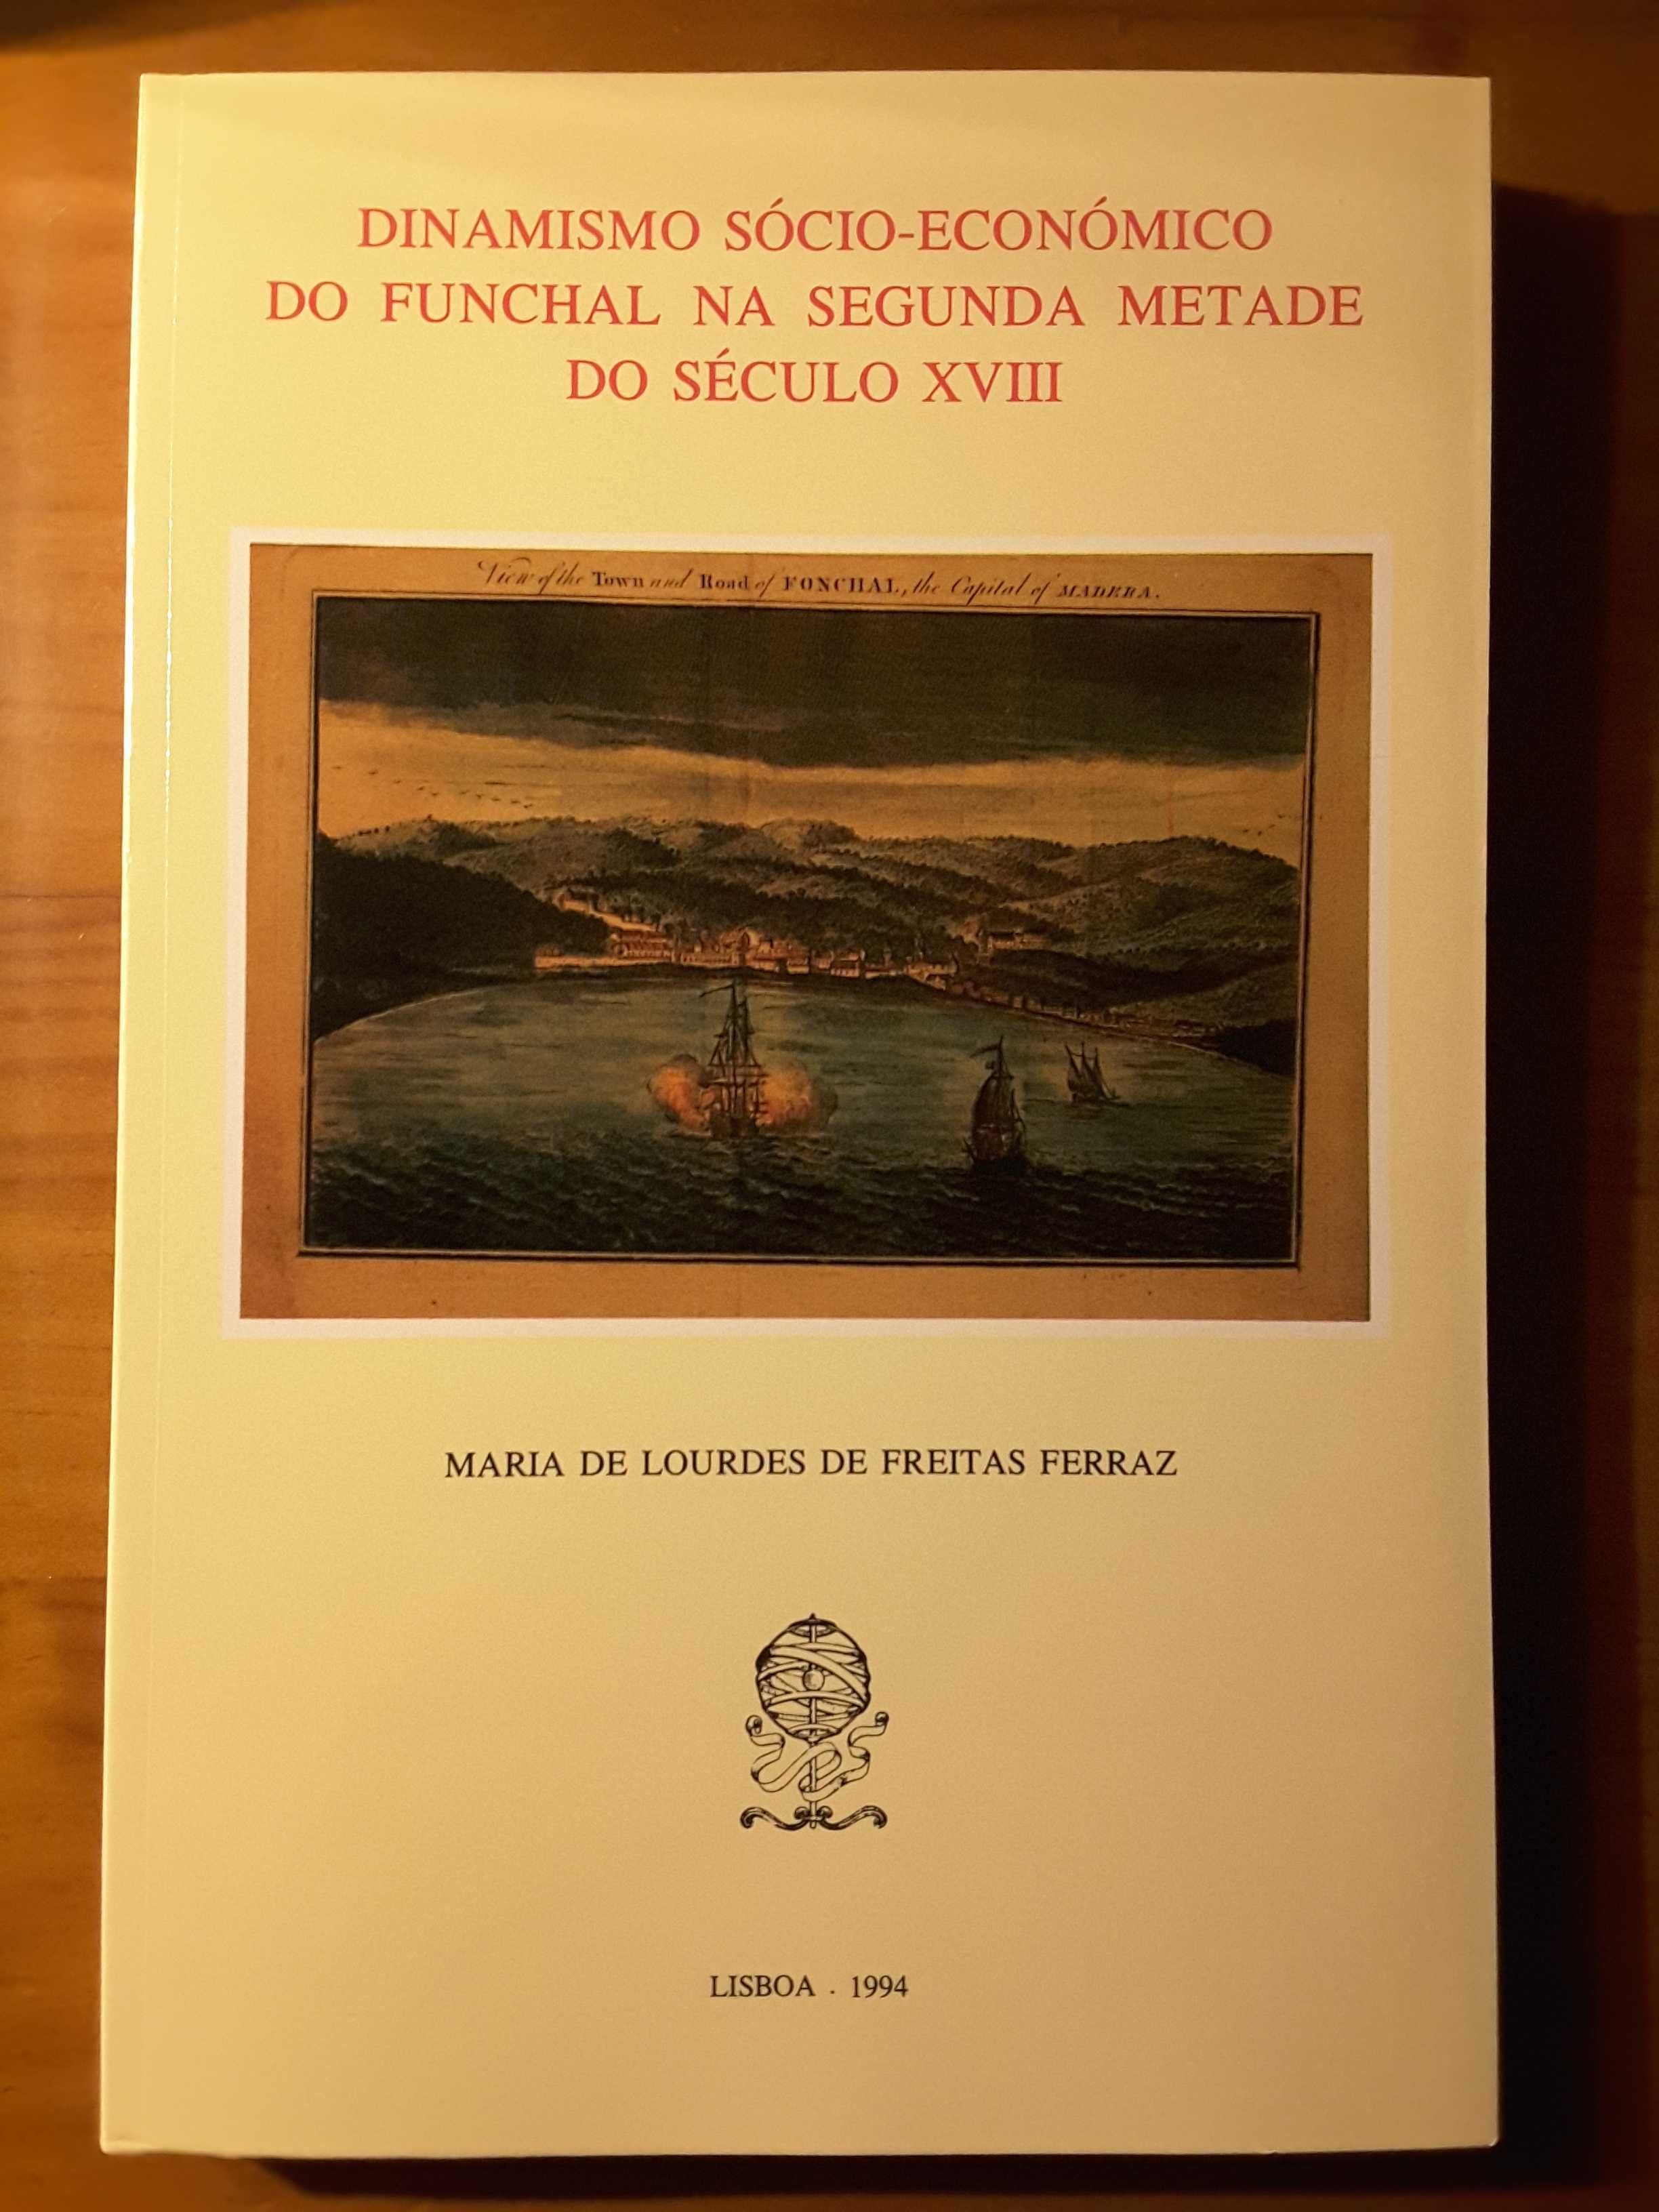 Dinamismo Sócio-Económico do Funchal / Lamego 1531